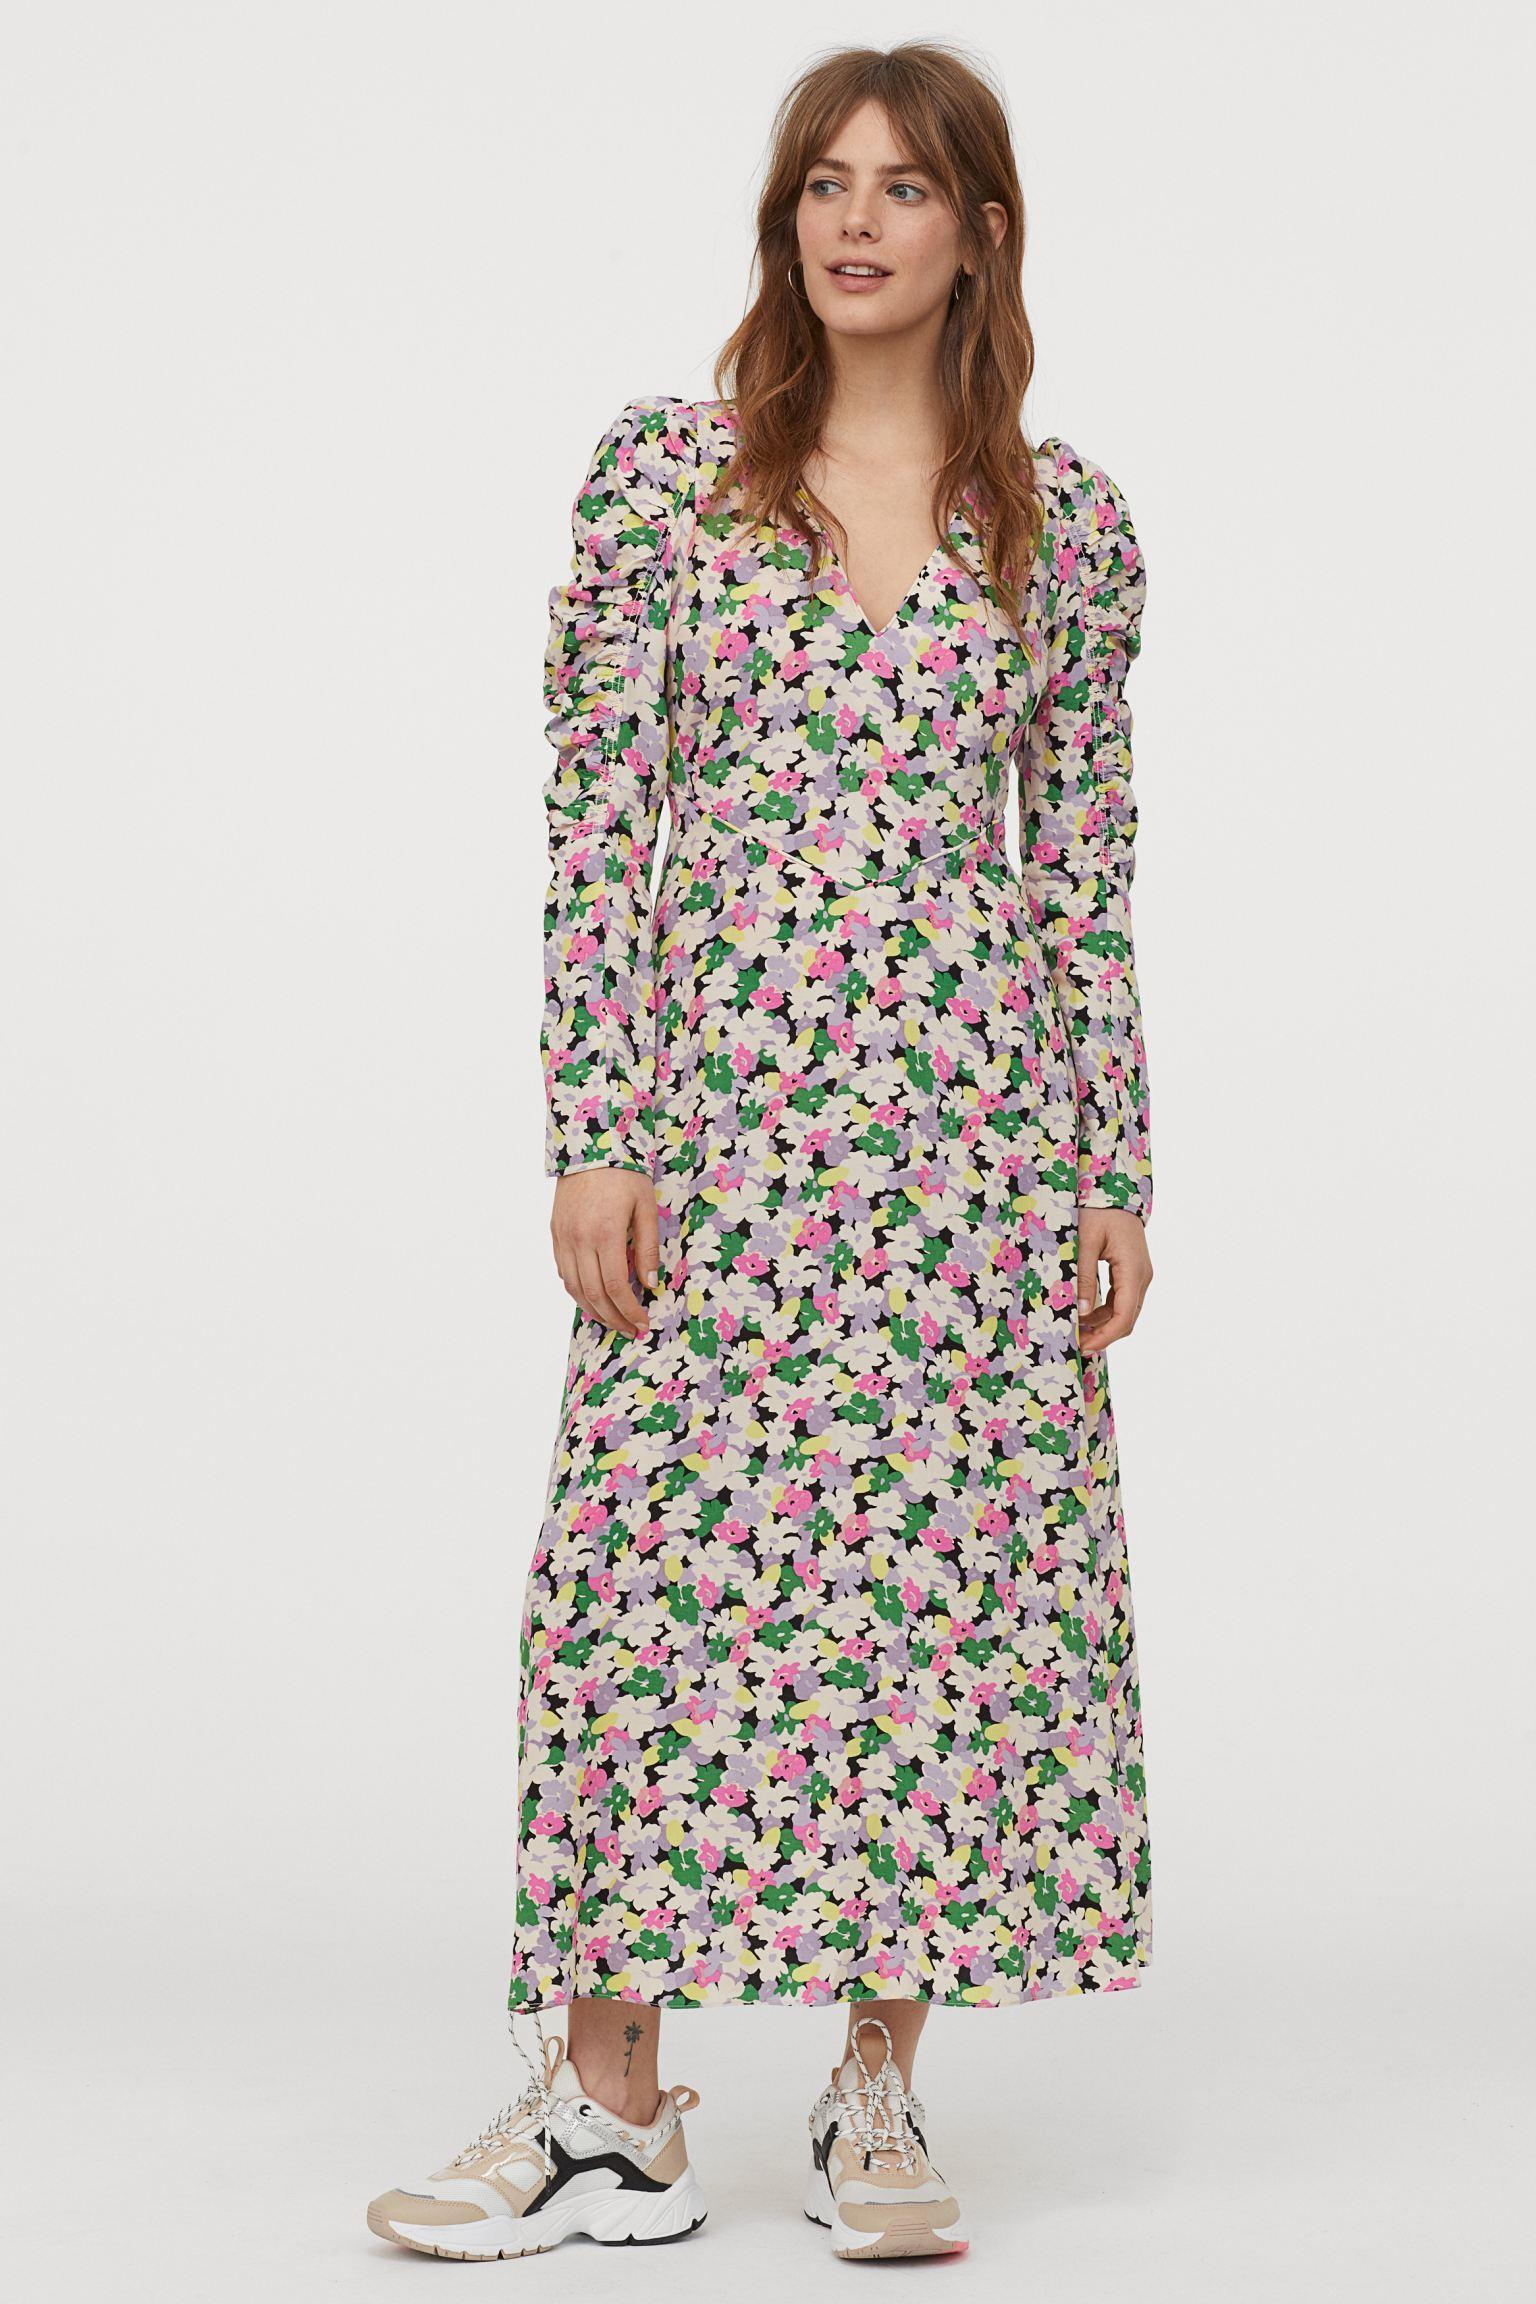 Отзыв на Платье с лицеолла из Интернет-Магазина H&M